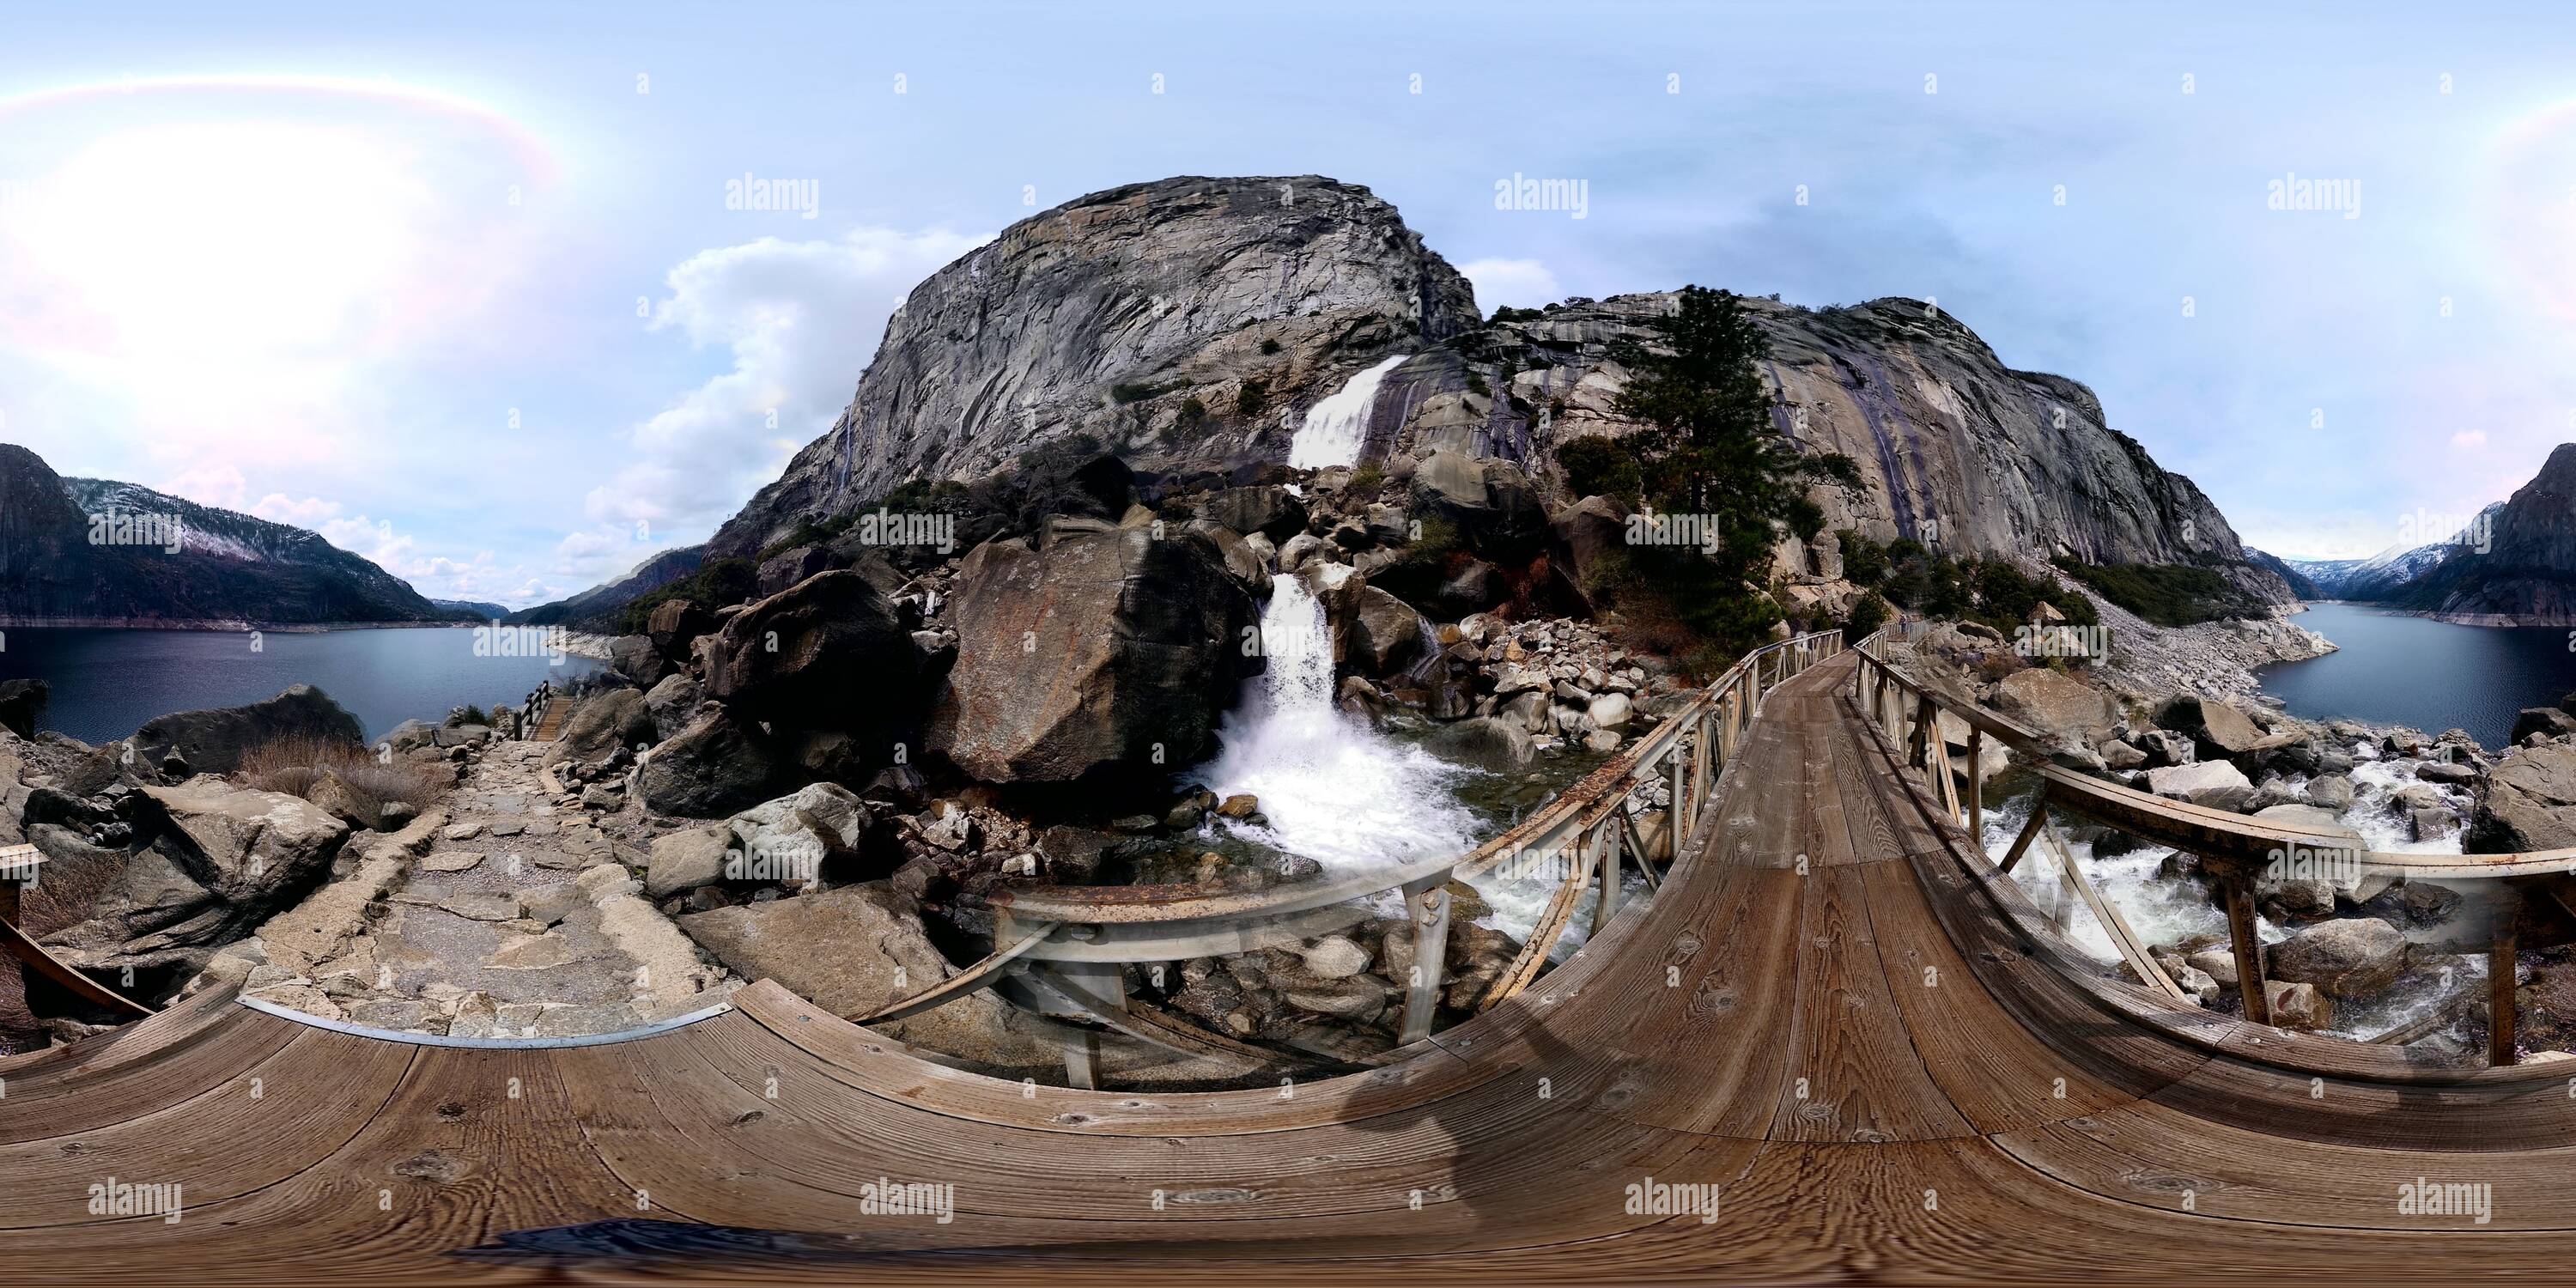 360 degree panoramic view of Wapama Falls